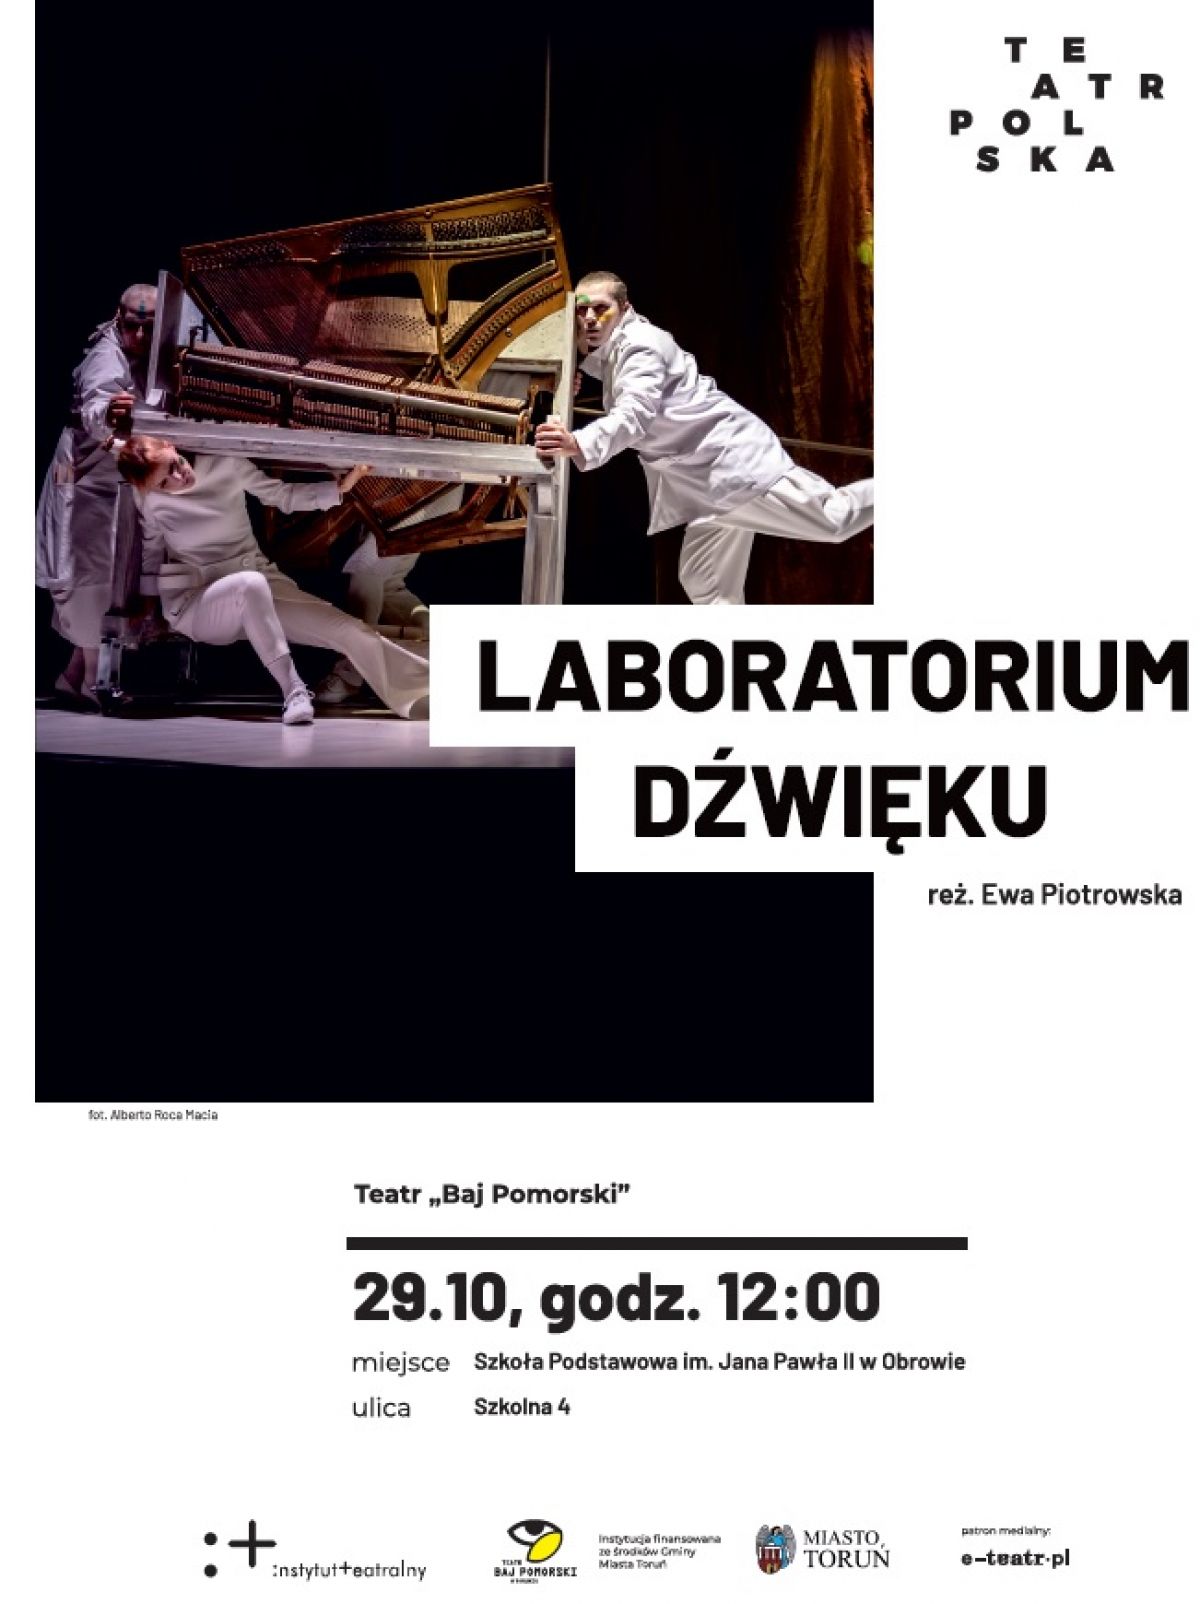 Teatr "Baj Pomorski" zagra spektakl w Obrowie